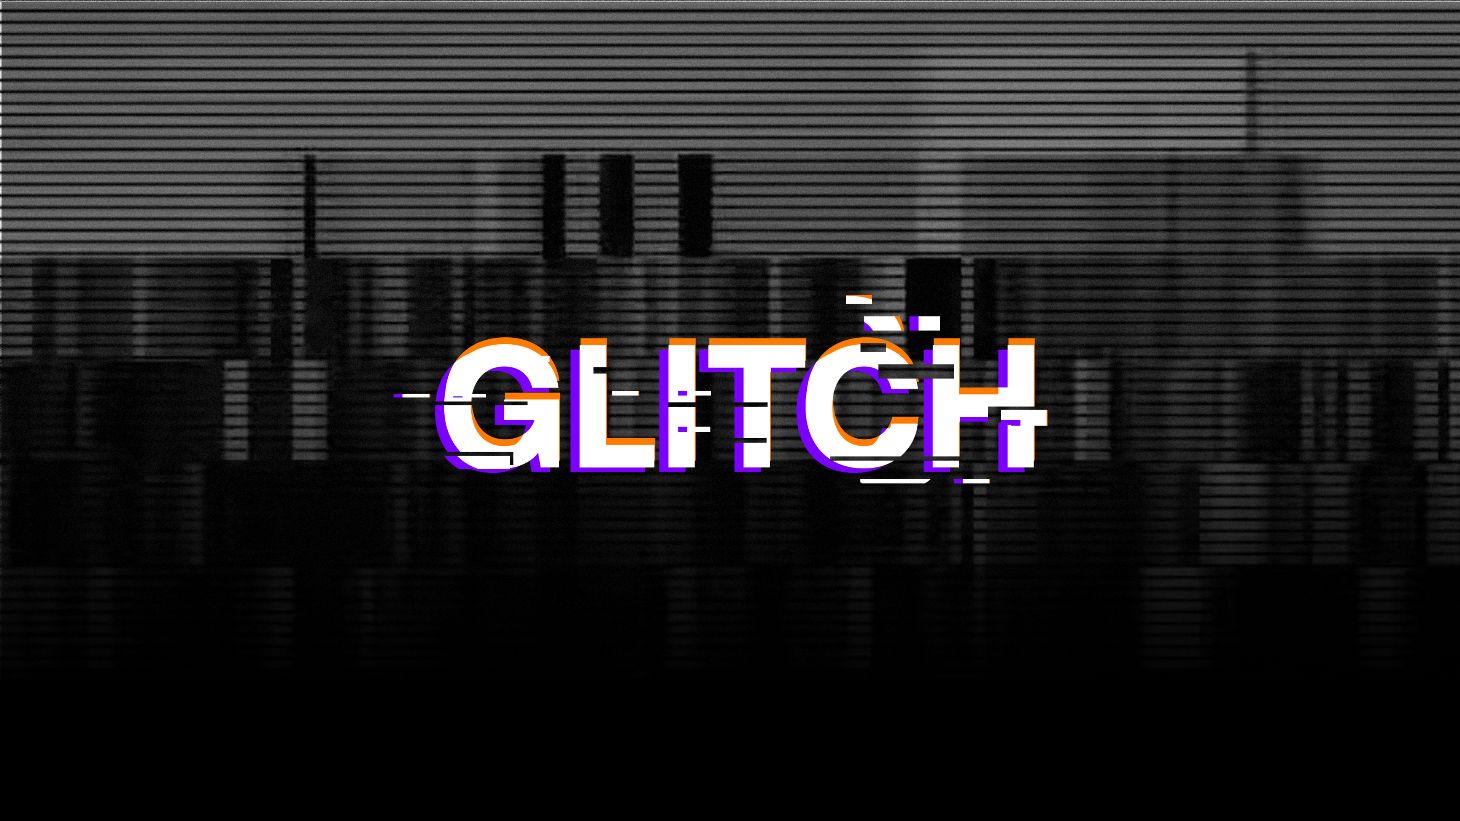 Glitch Text Effect  Glitch text, Text effects, Glitch